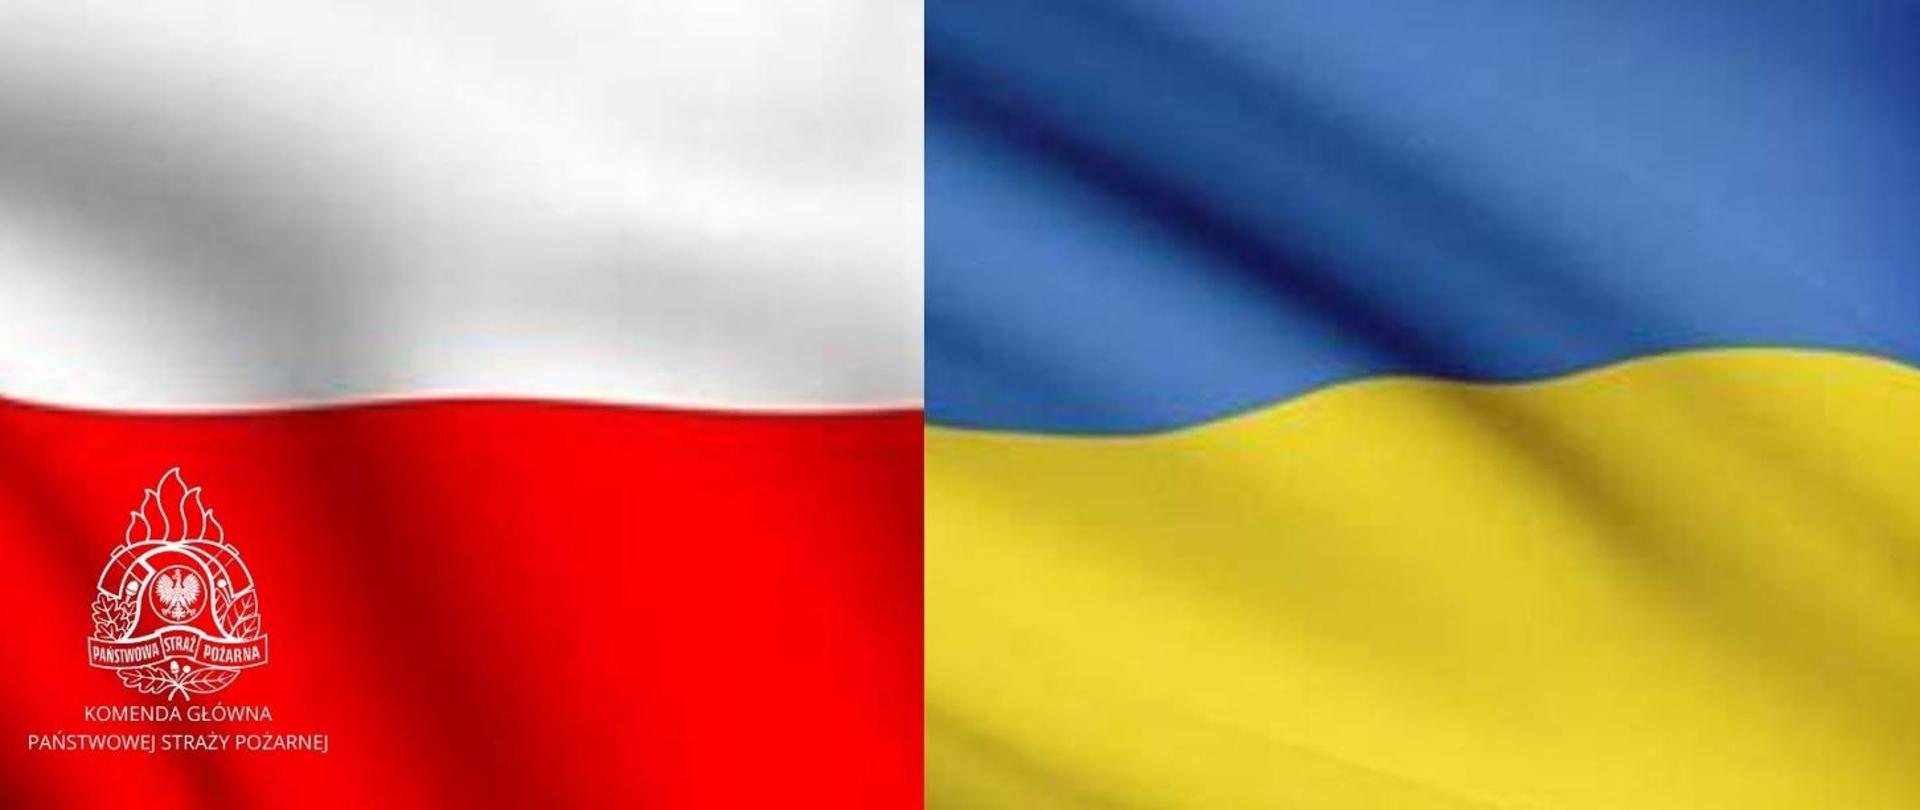 Baner z flagą Polski z lewej strony i flagą Ukrainy z prawej strony. W dolnym lewym rogu biały logotyp Państwowej Straży Pożarnej z napisem poniżej Komenda Główna Państwowej Straży Pożarnej